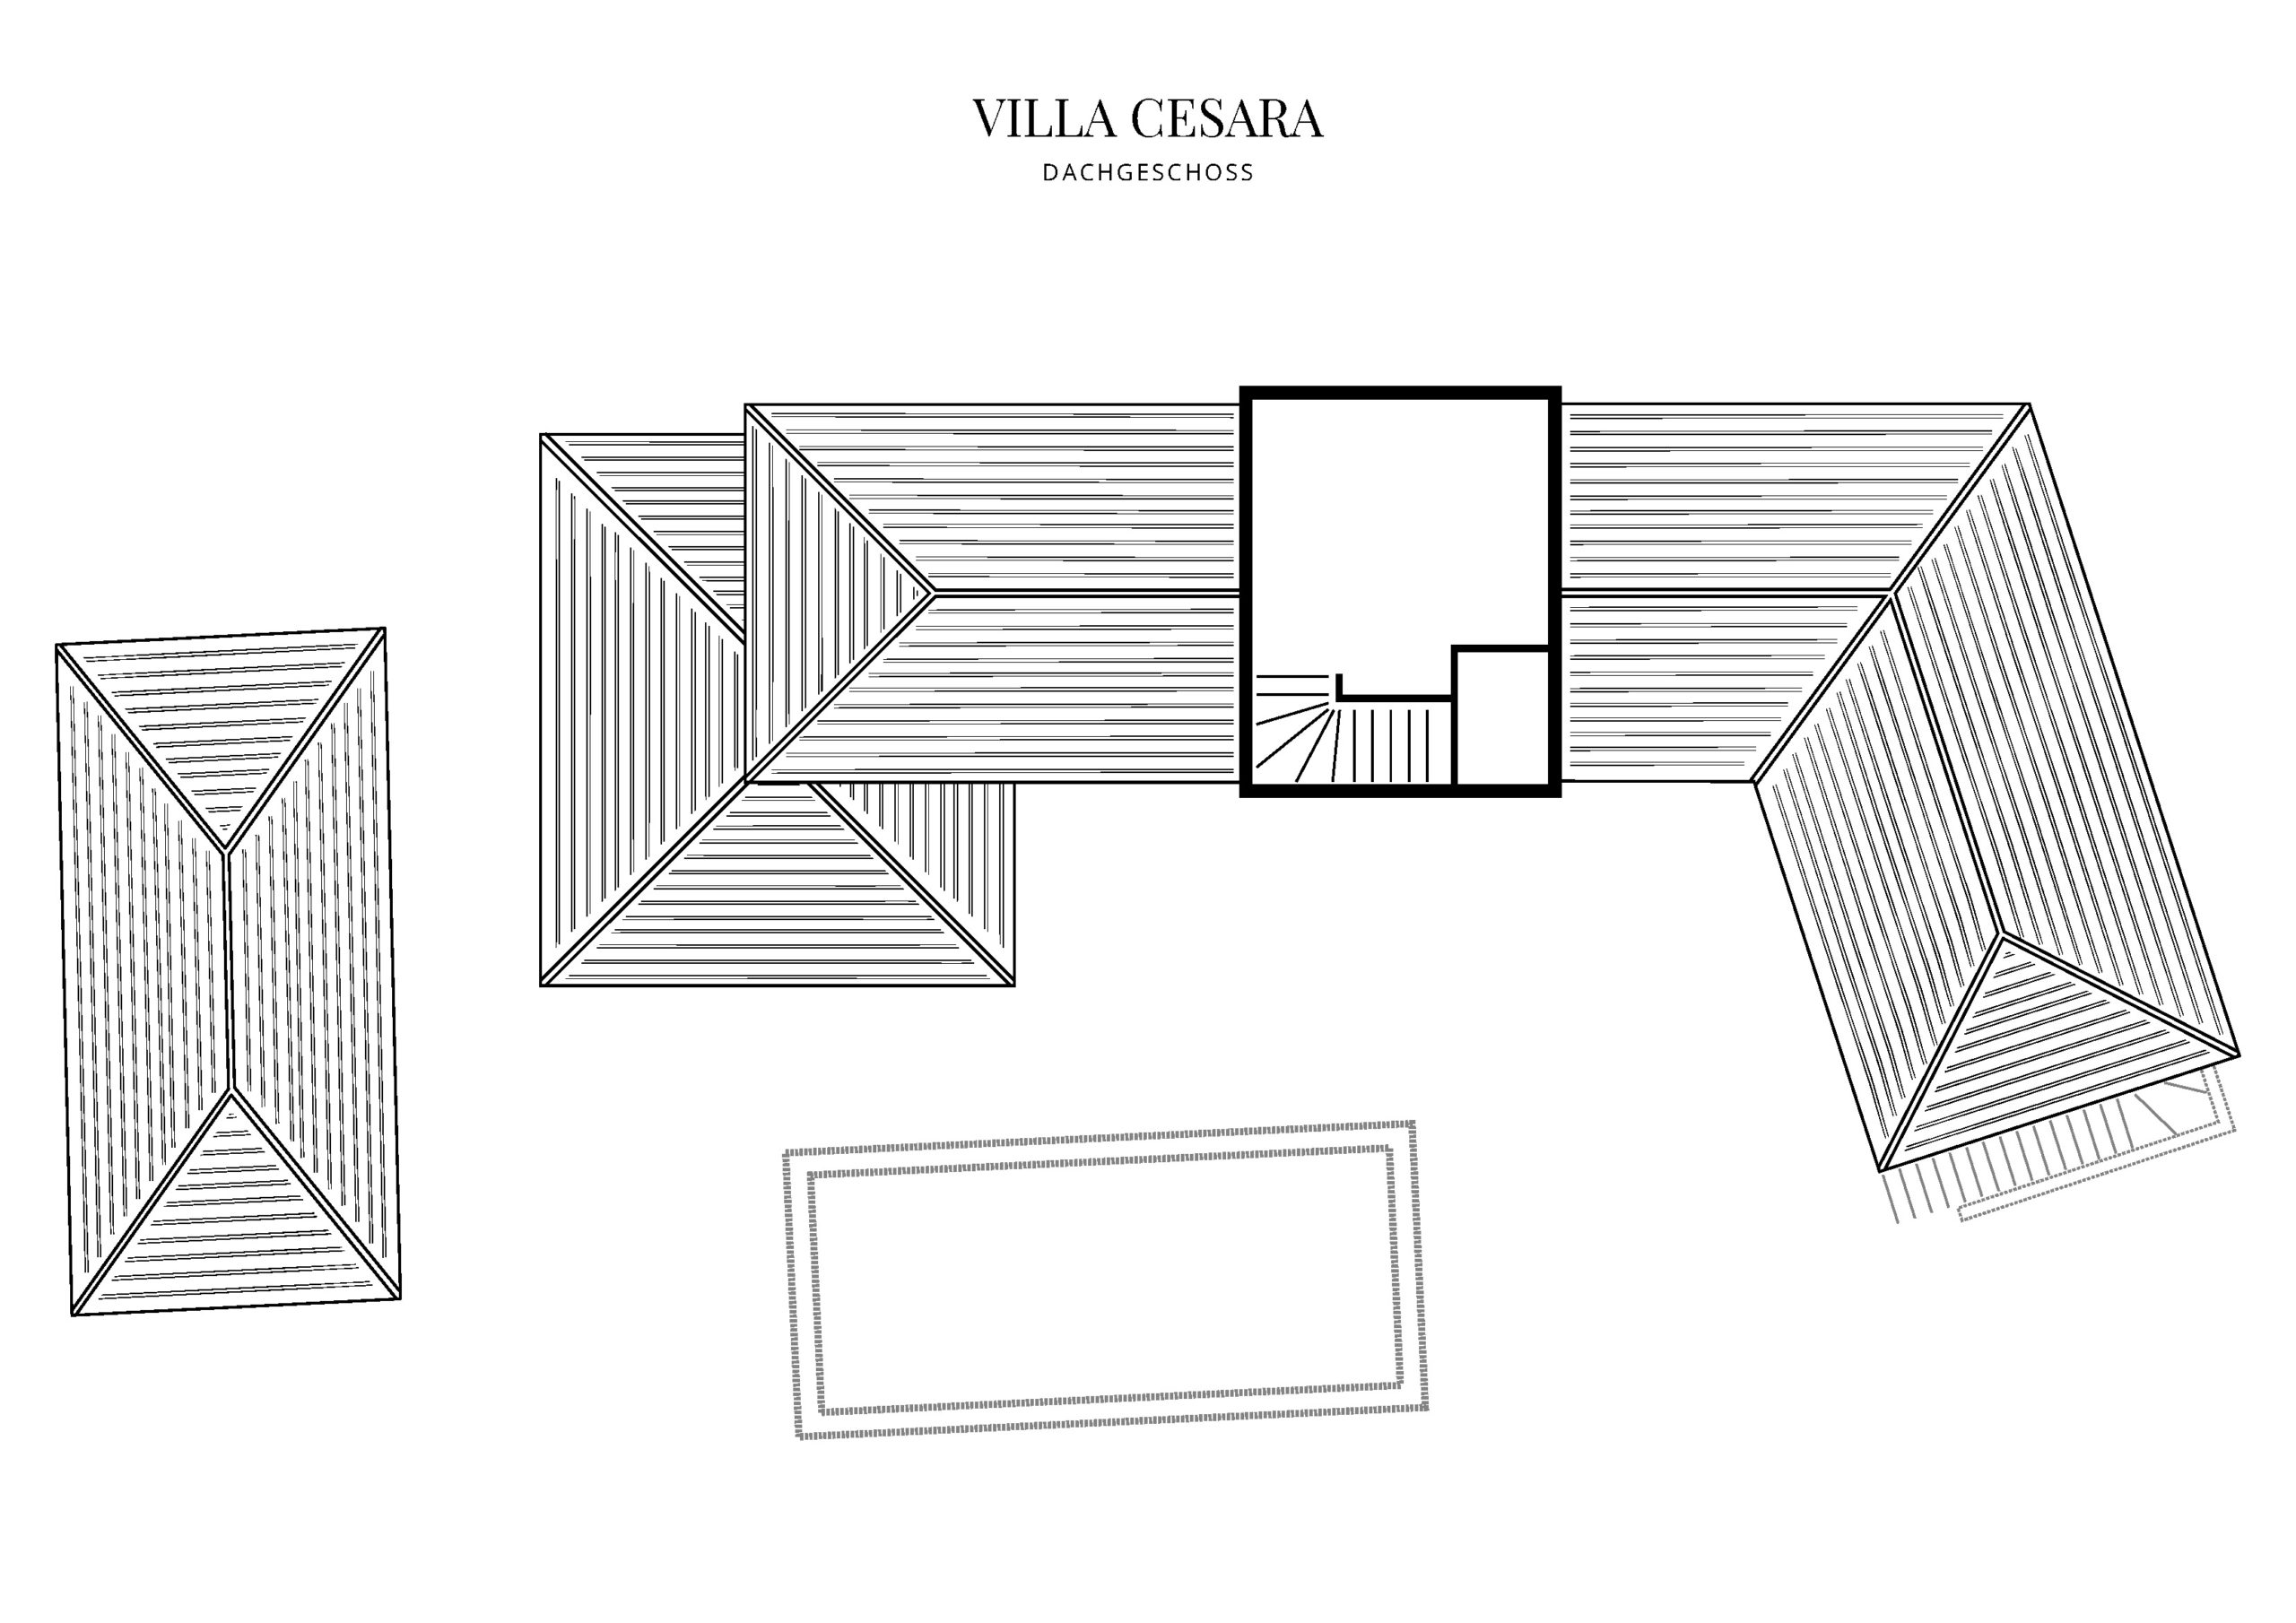 Grafik Grundriss Dachgeschoss Villa Cesara